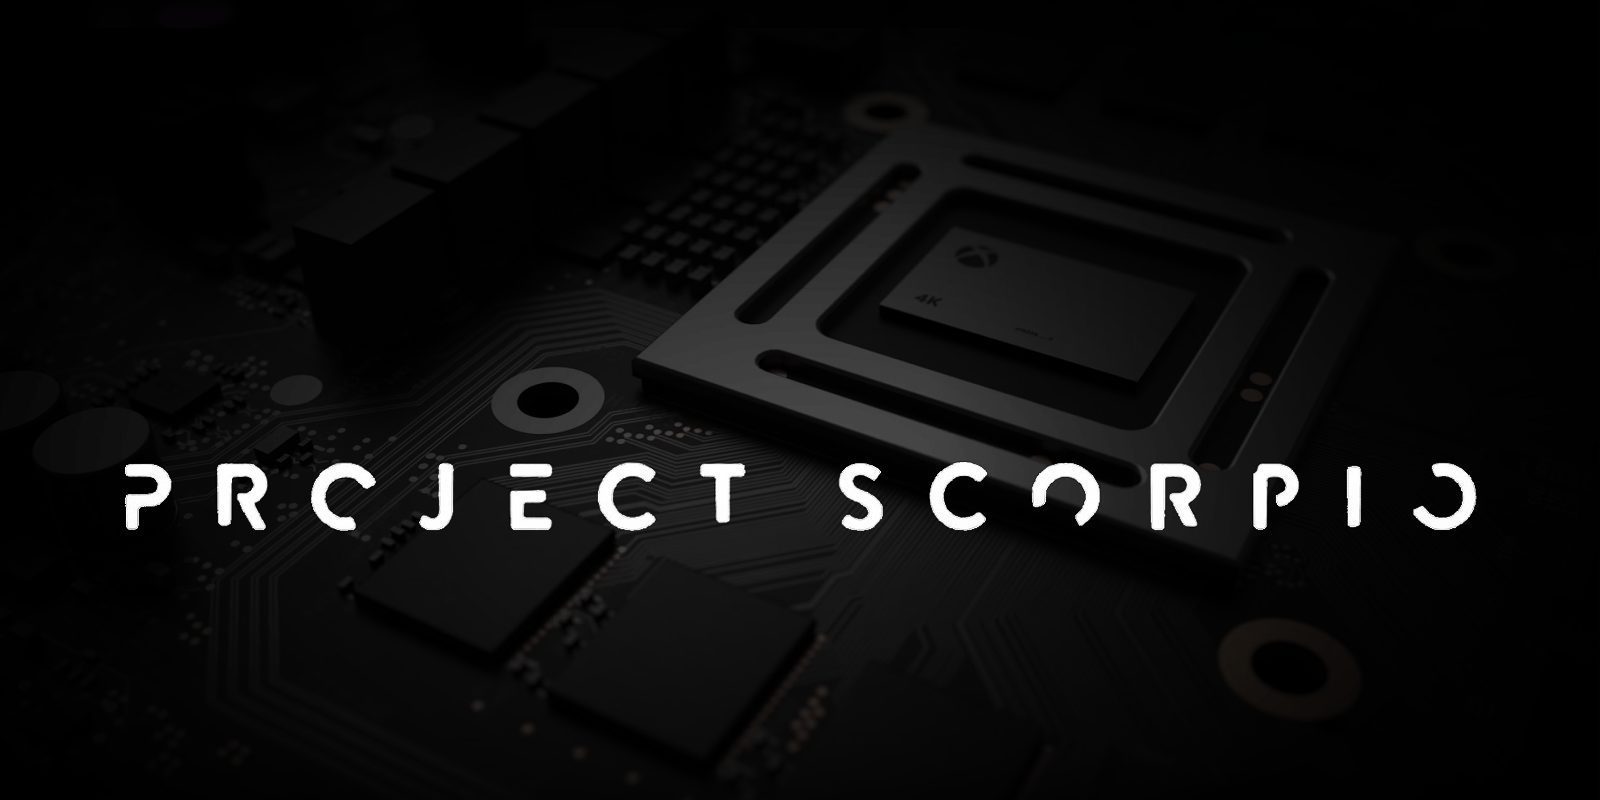 Xbox Project Scorpio: todo lo que sabemos - Reportaje